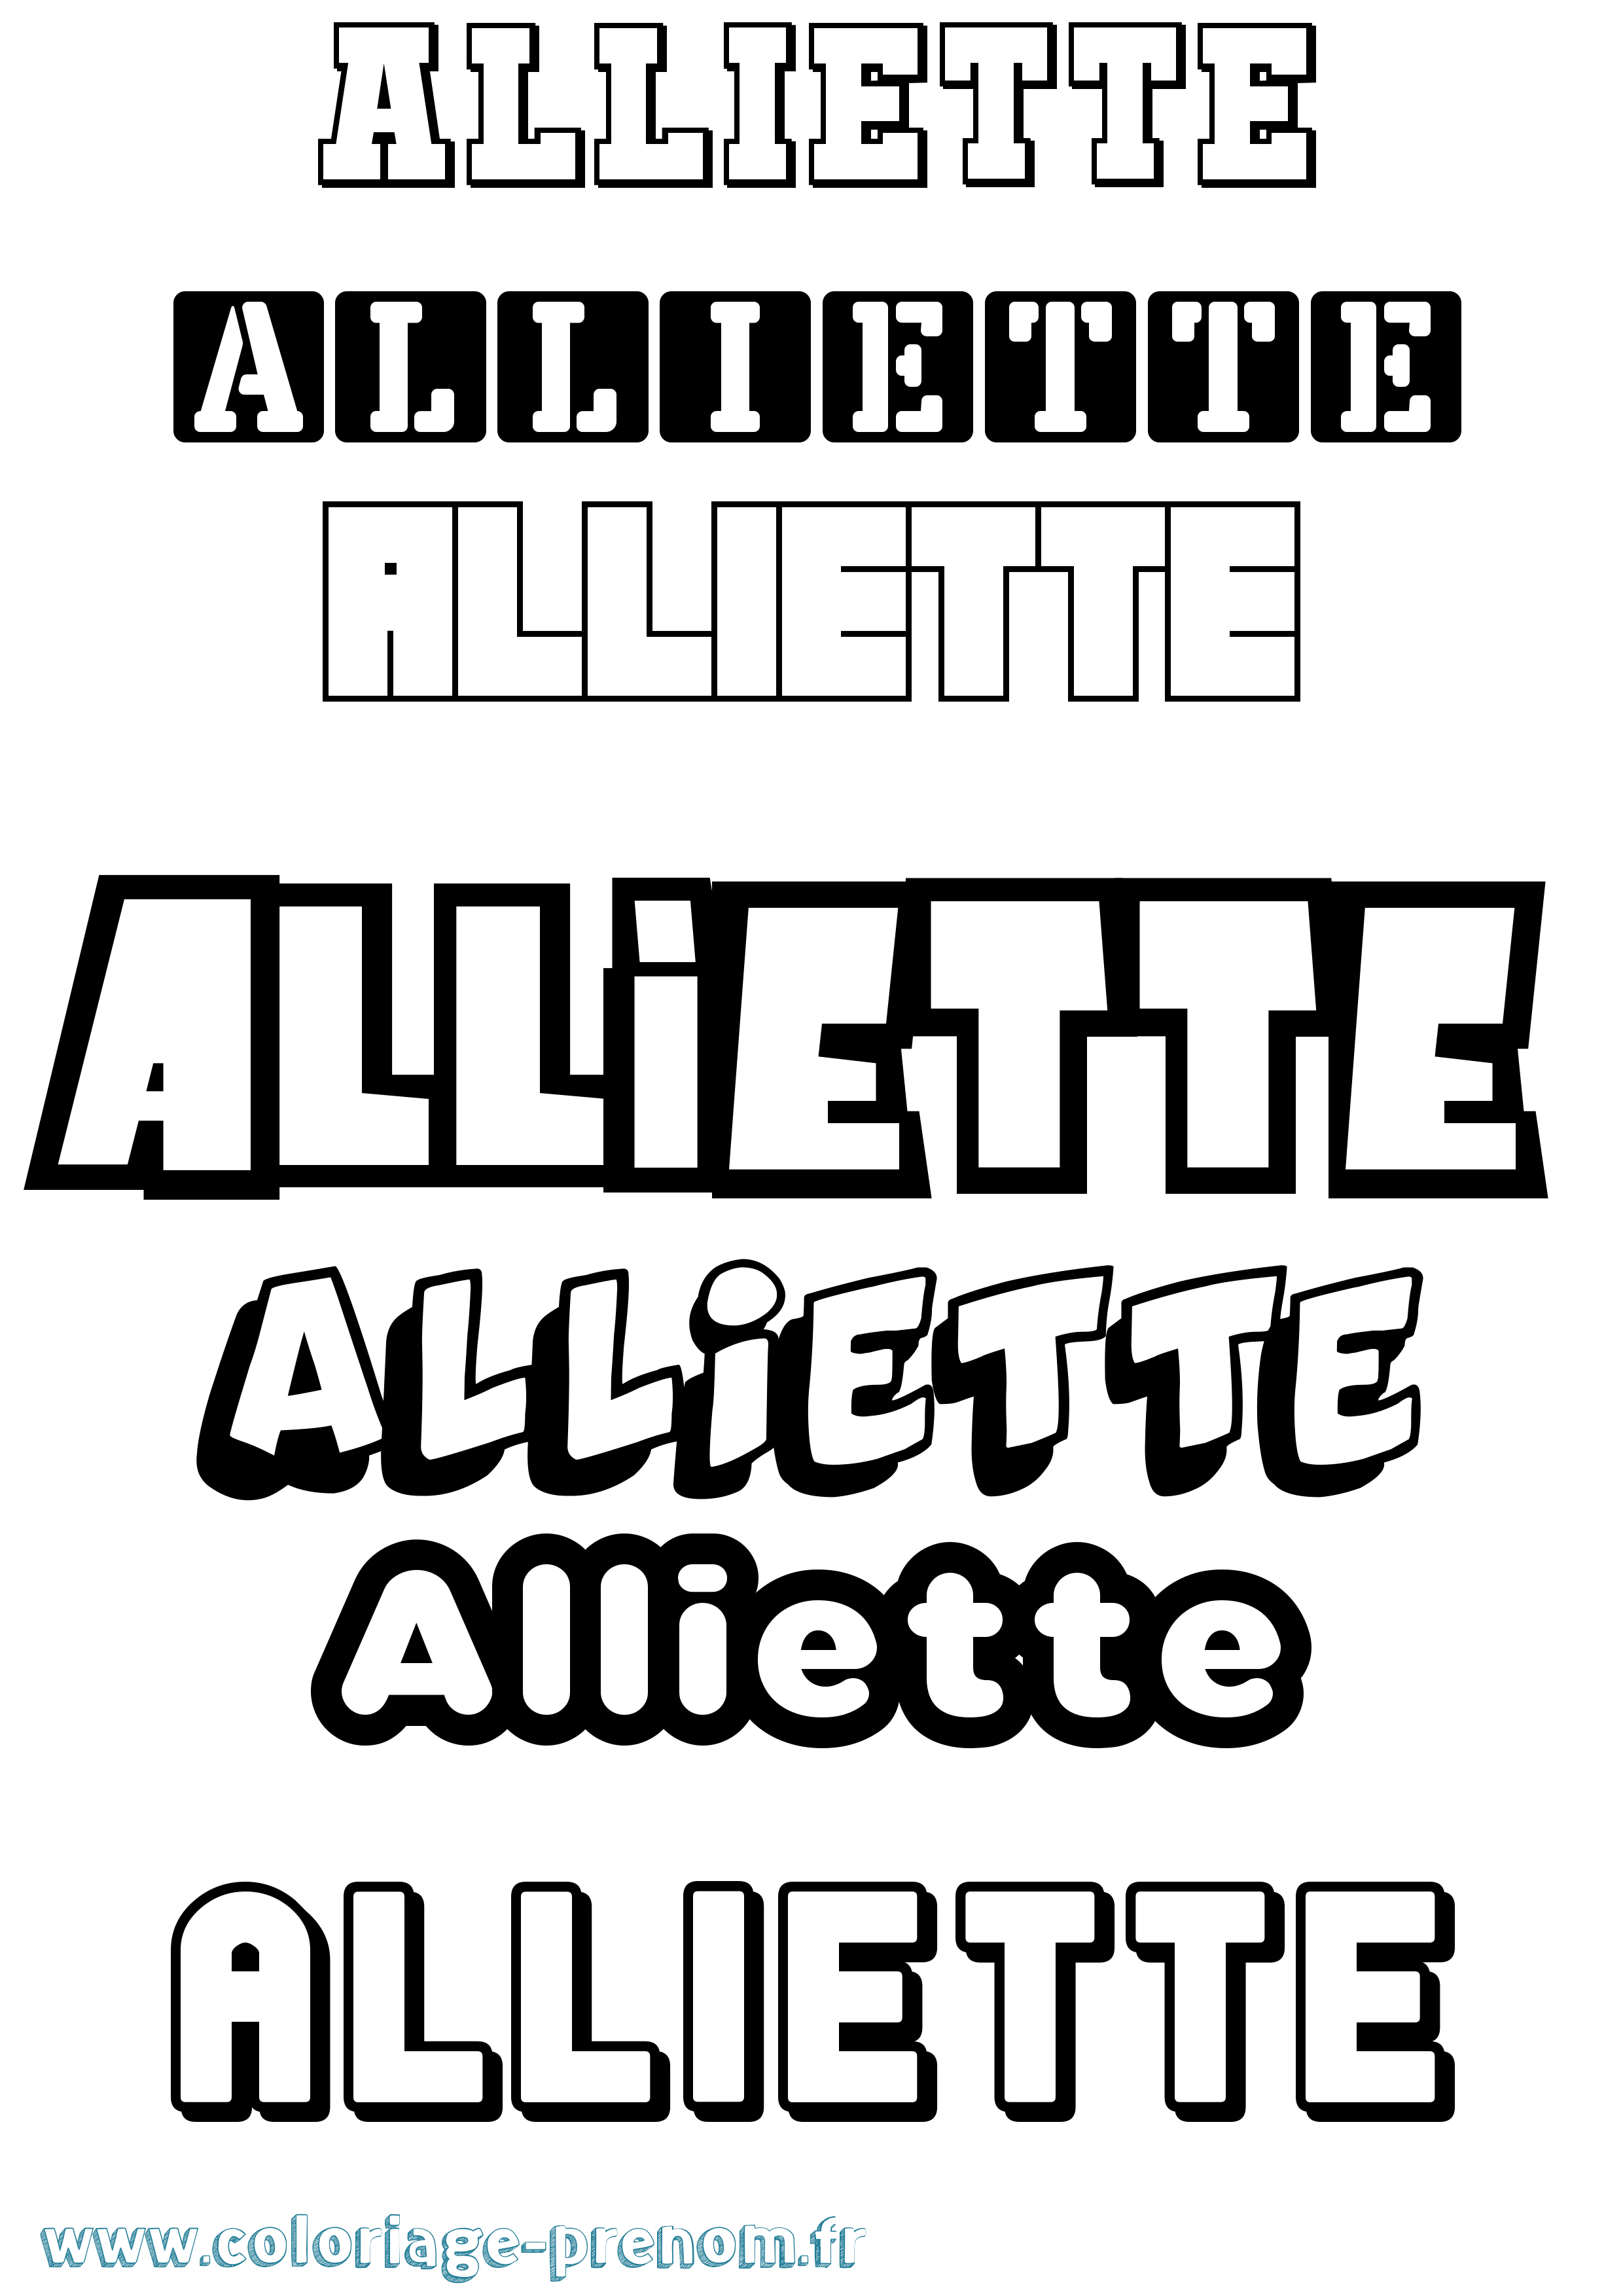 Coloriage prénom Alliette Simple